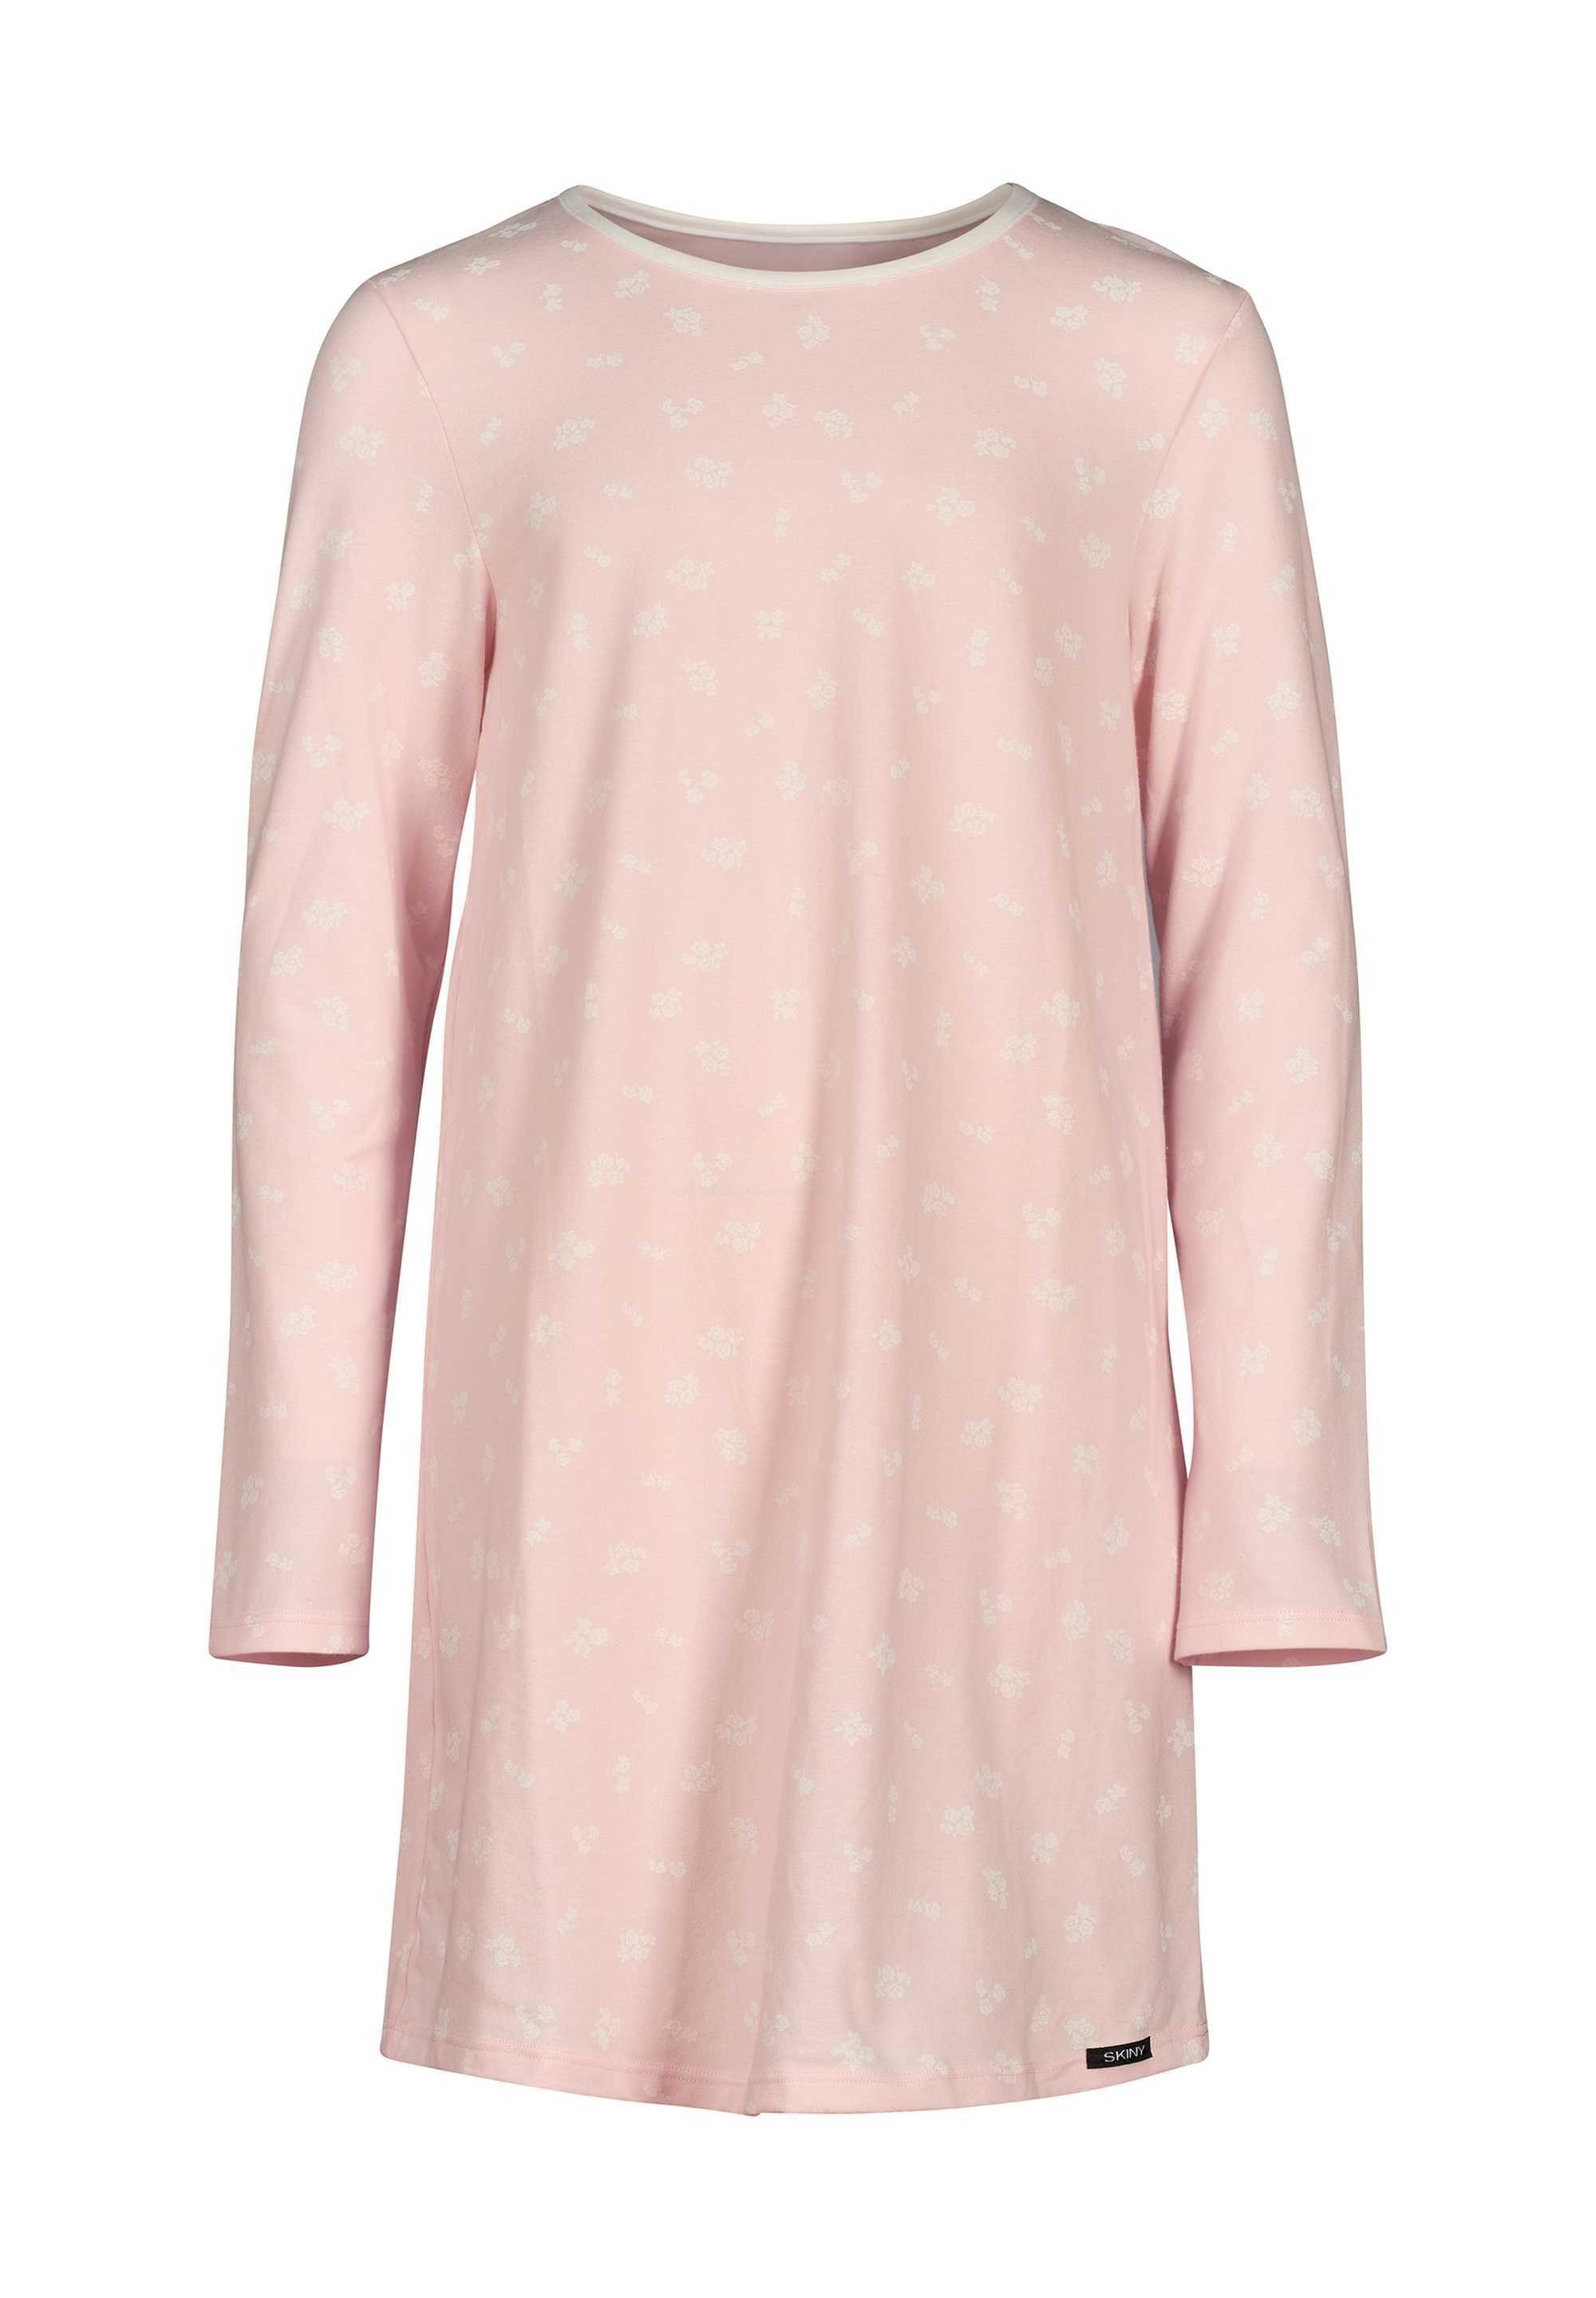 Skiny Pyjama Mädchen Nachthemd - Sleepshirt, Langarm, Kinder Rosa